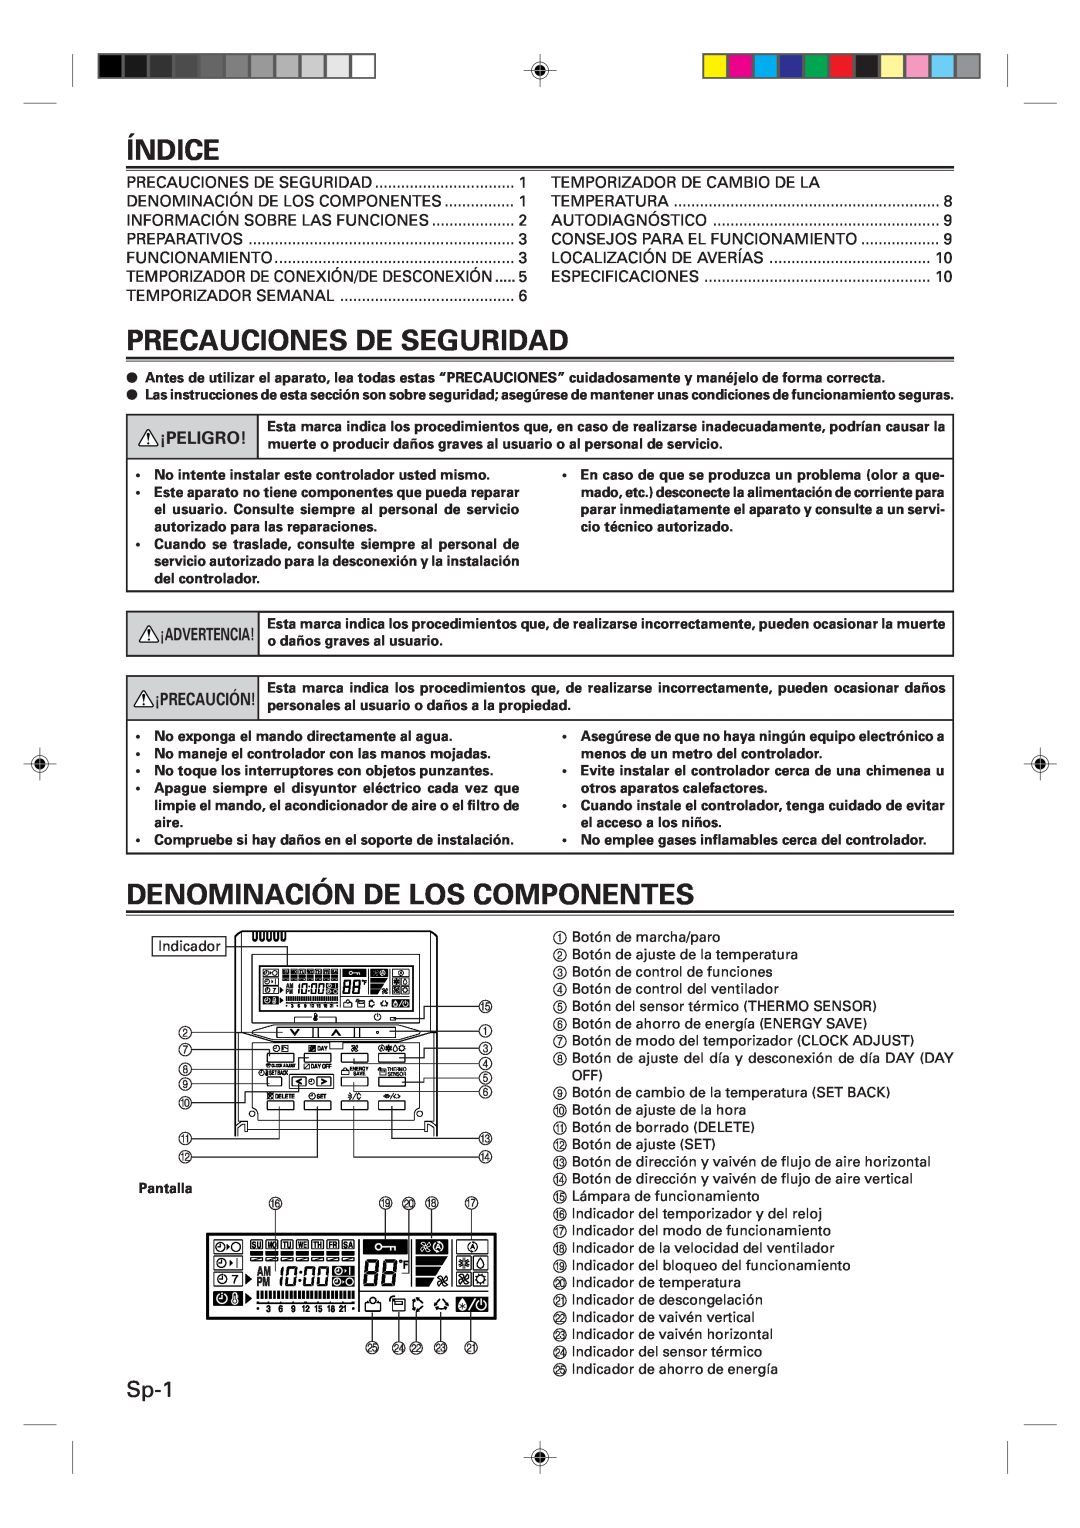 Fujitsu UTB-UUB manual Índice, Precauciones De Seguridad, Denominación De Los Componentes, Sp-1, ¡Peligro, ¡Precaución 